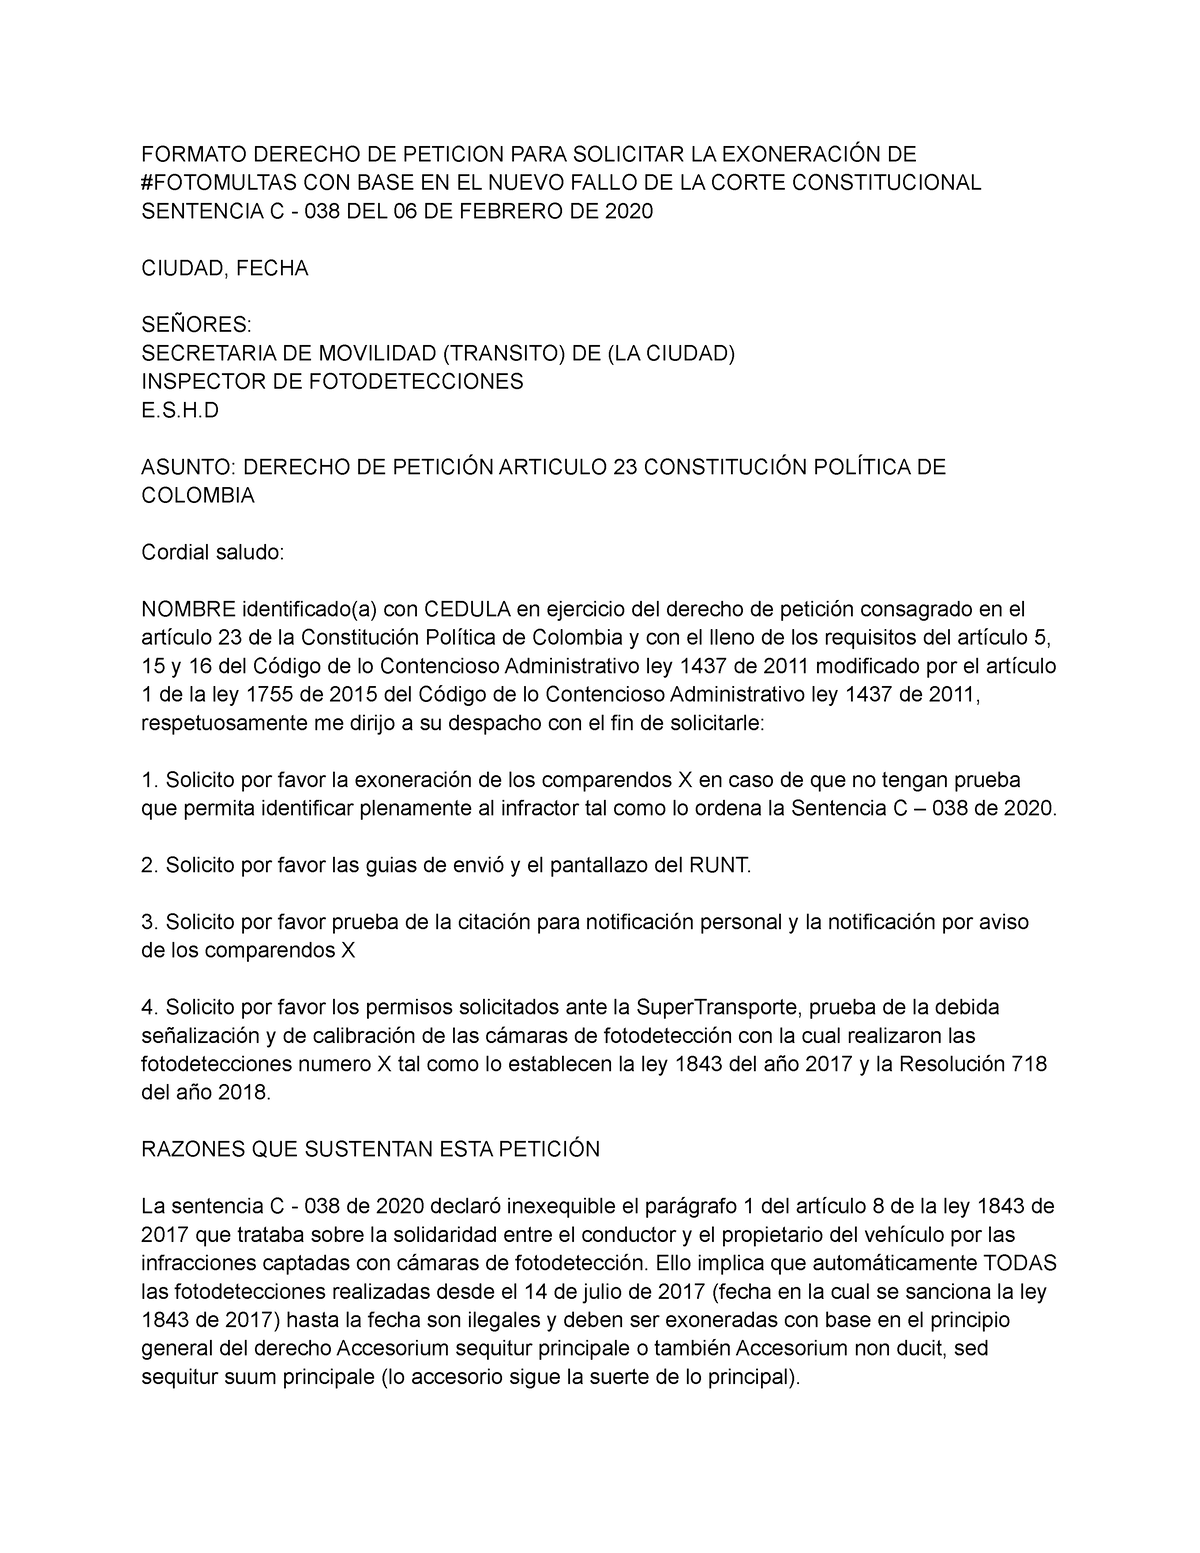 Fotomulta Derecho de Peticion - FORMATO DERECHO DE PETICION PARA ...